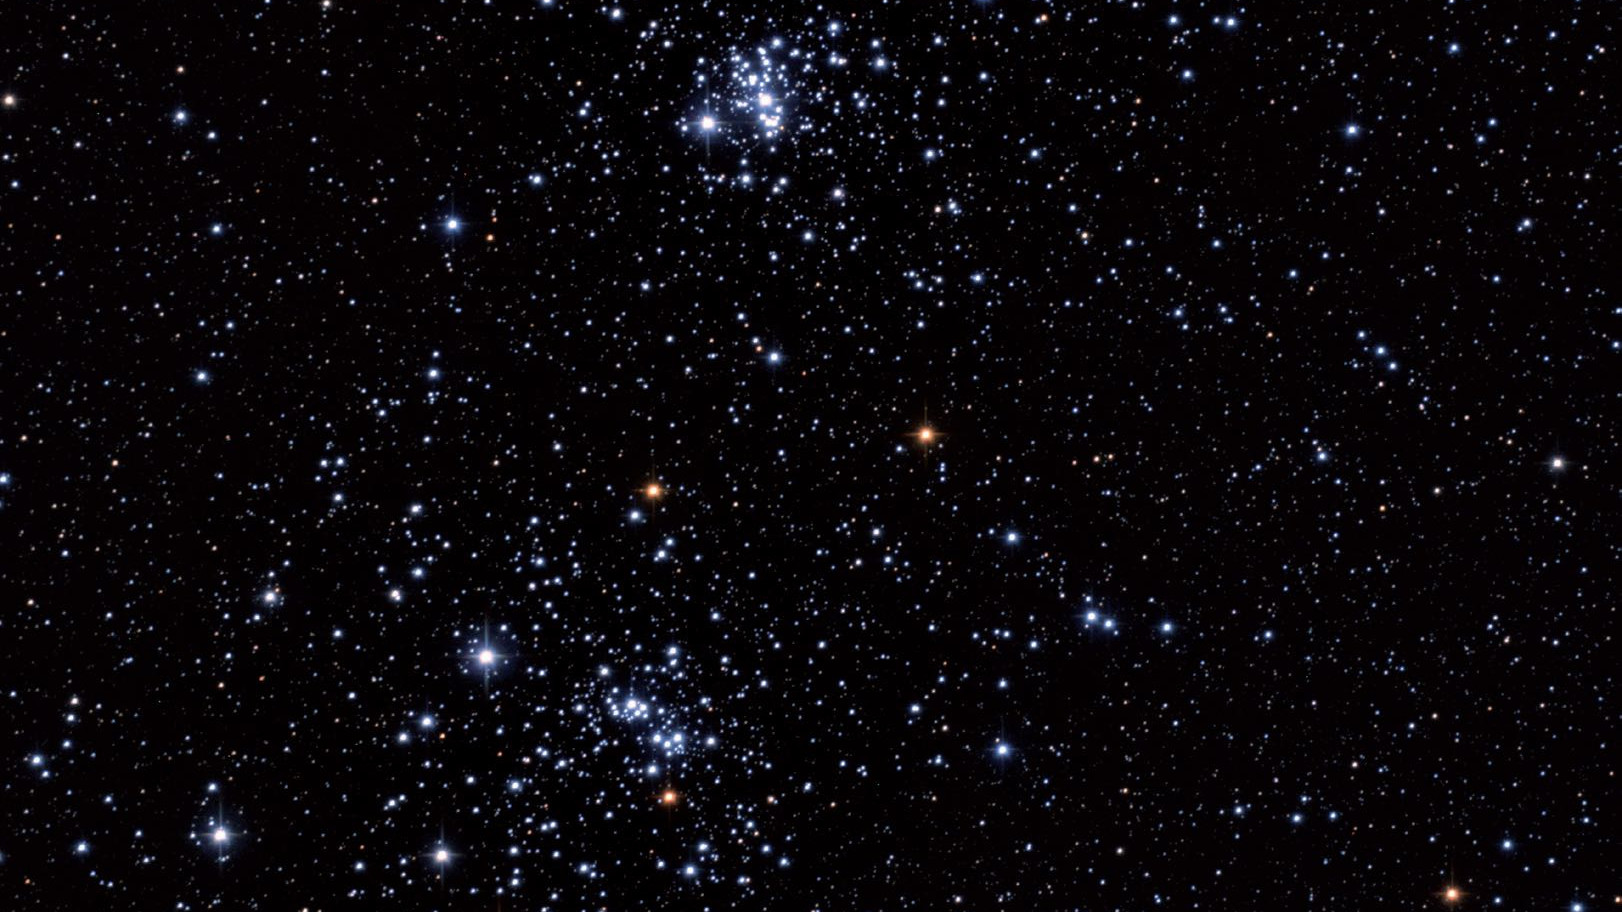 Gromada Podwójna h i χ Persei, znana także jako NGC 869/884, ze względu na swoje rozmiary jest wspaniałym obiektem lornetkowym. Marcus Degenkolbe